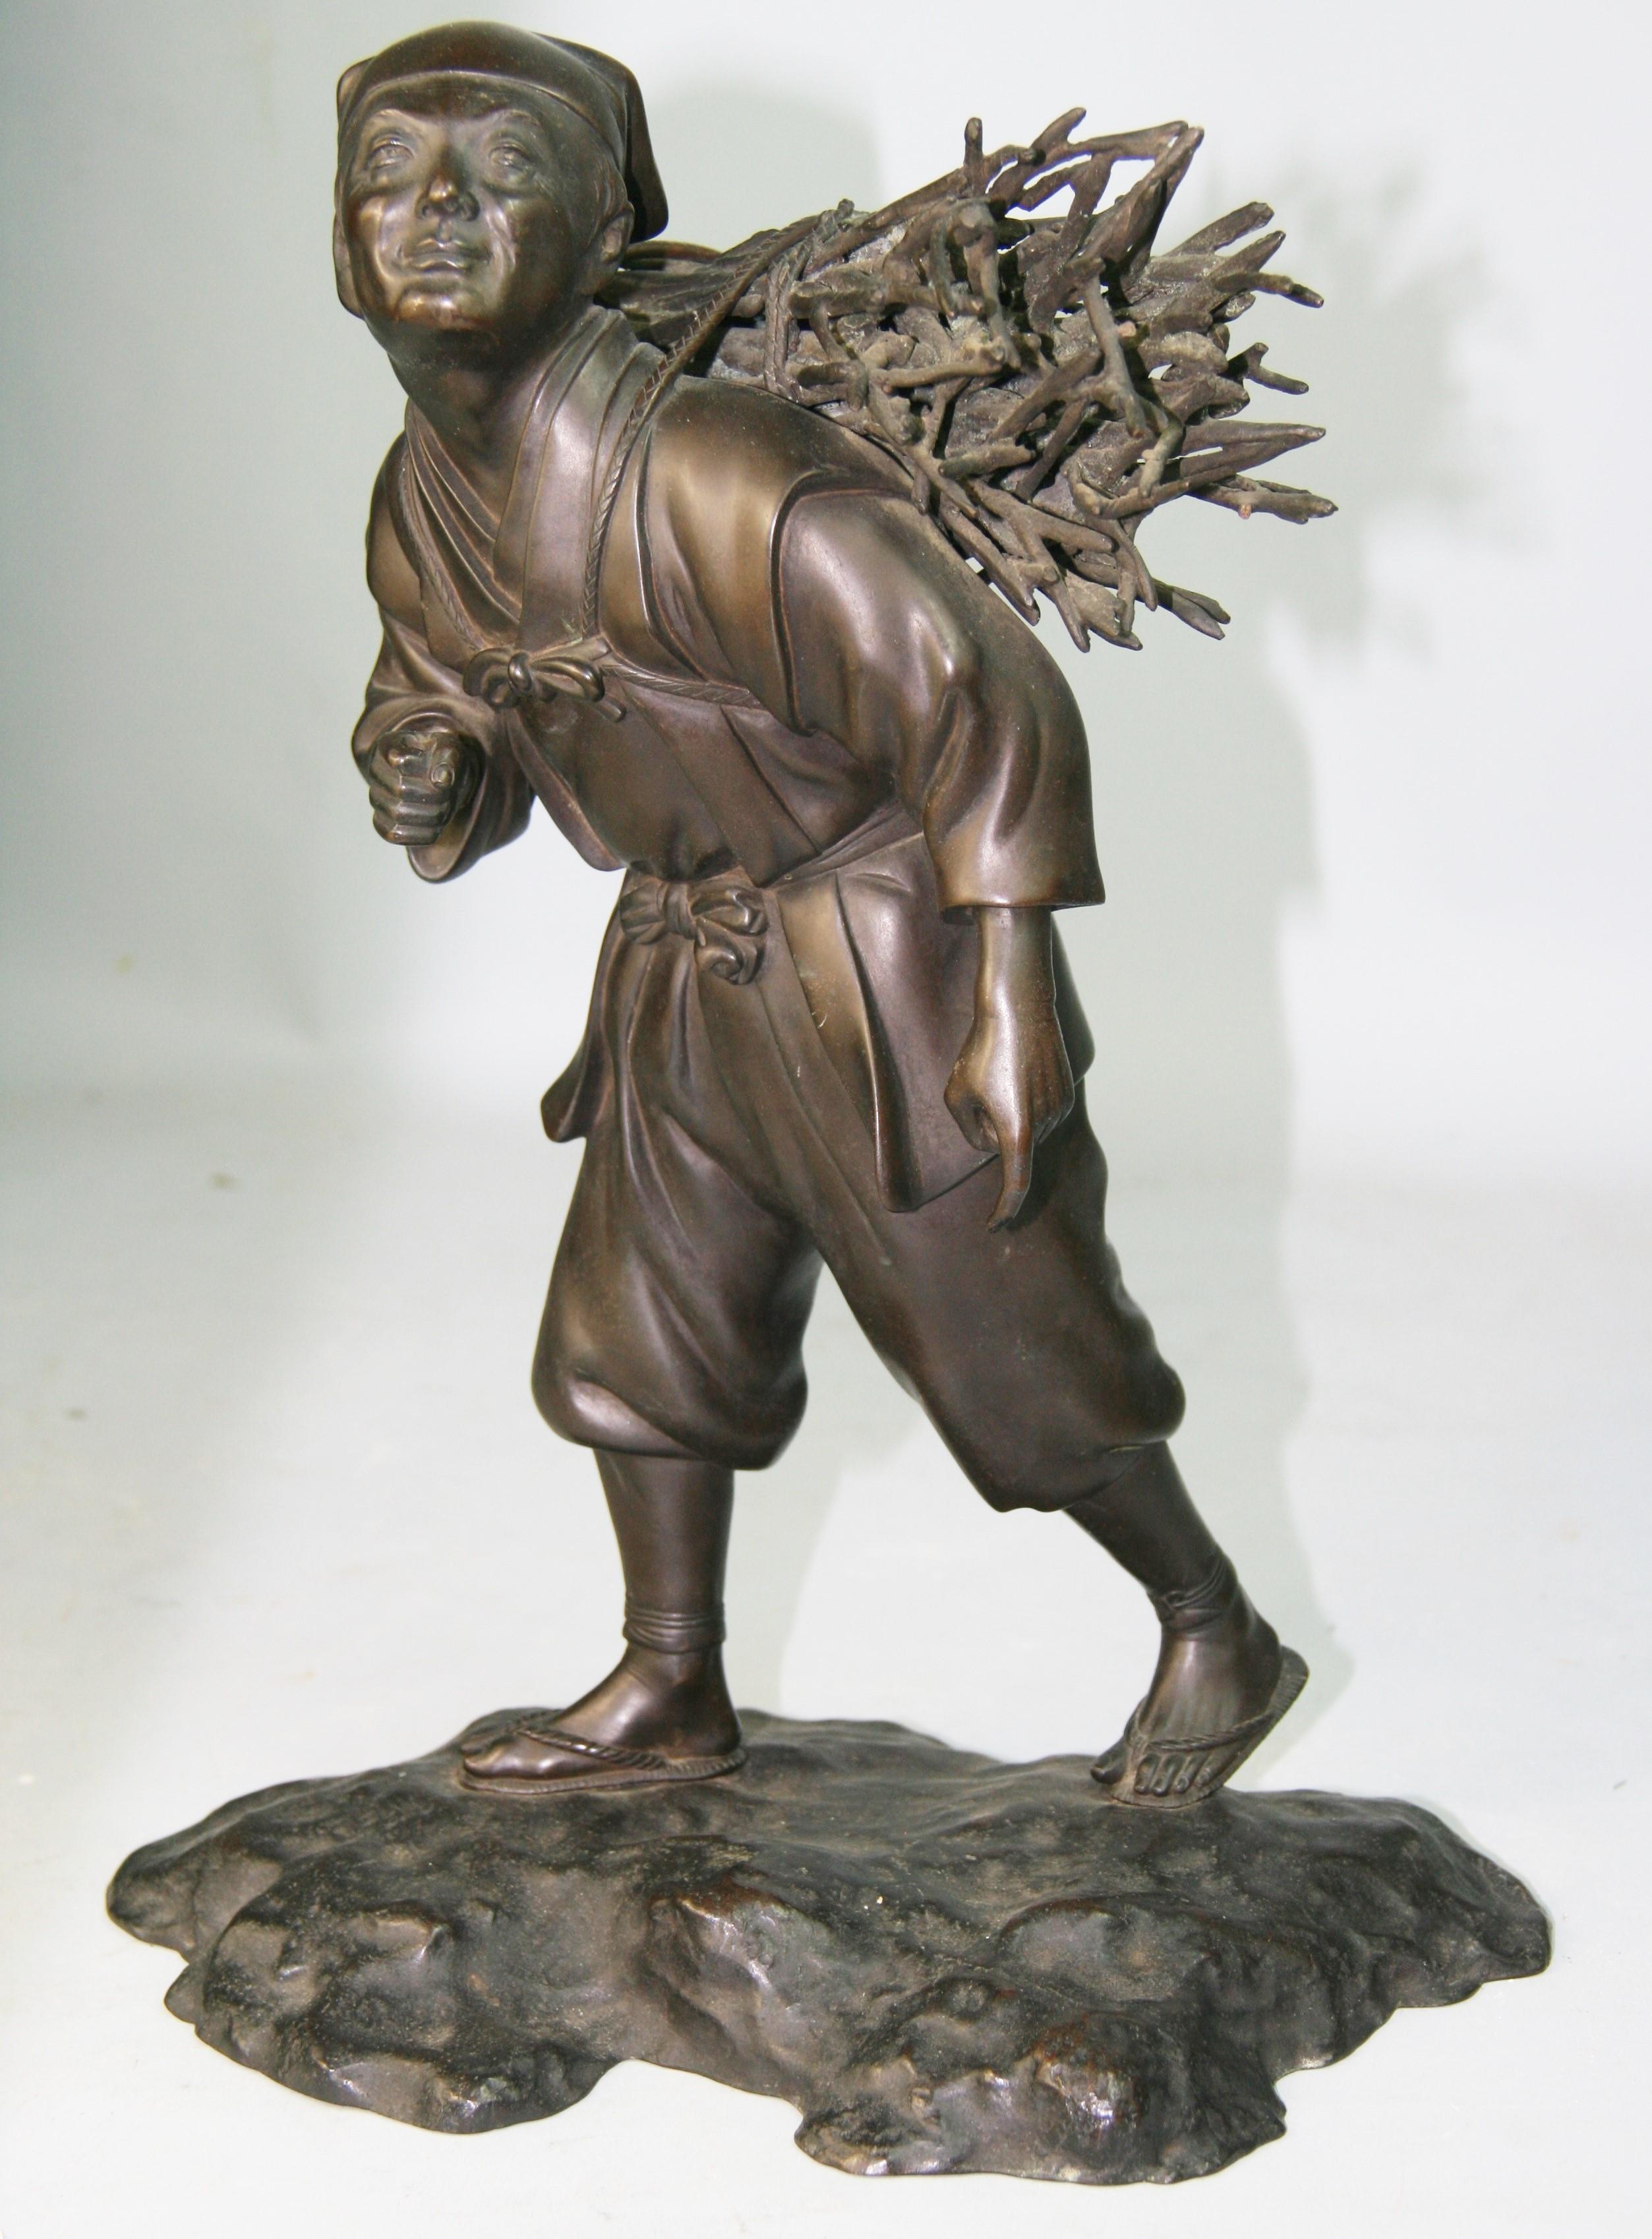 1351 Sculpture japonaise en bronze représentant un ouvrier transportant du bois.
Des détails incroyables.